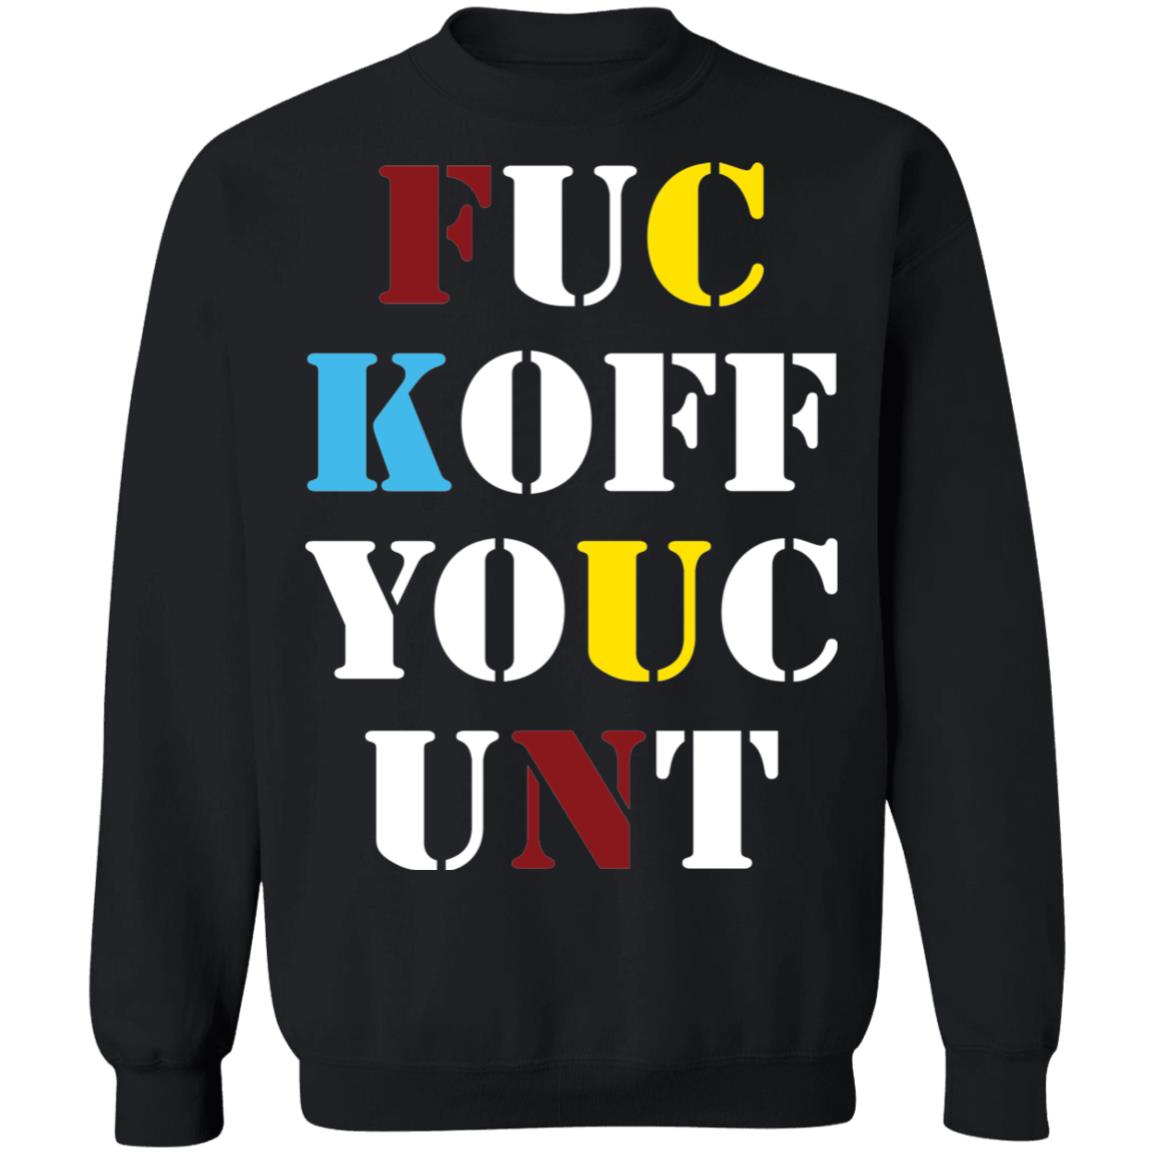 Fuc Koff Youc Unt Shirt 1